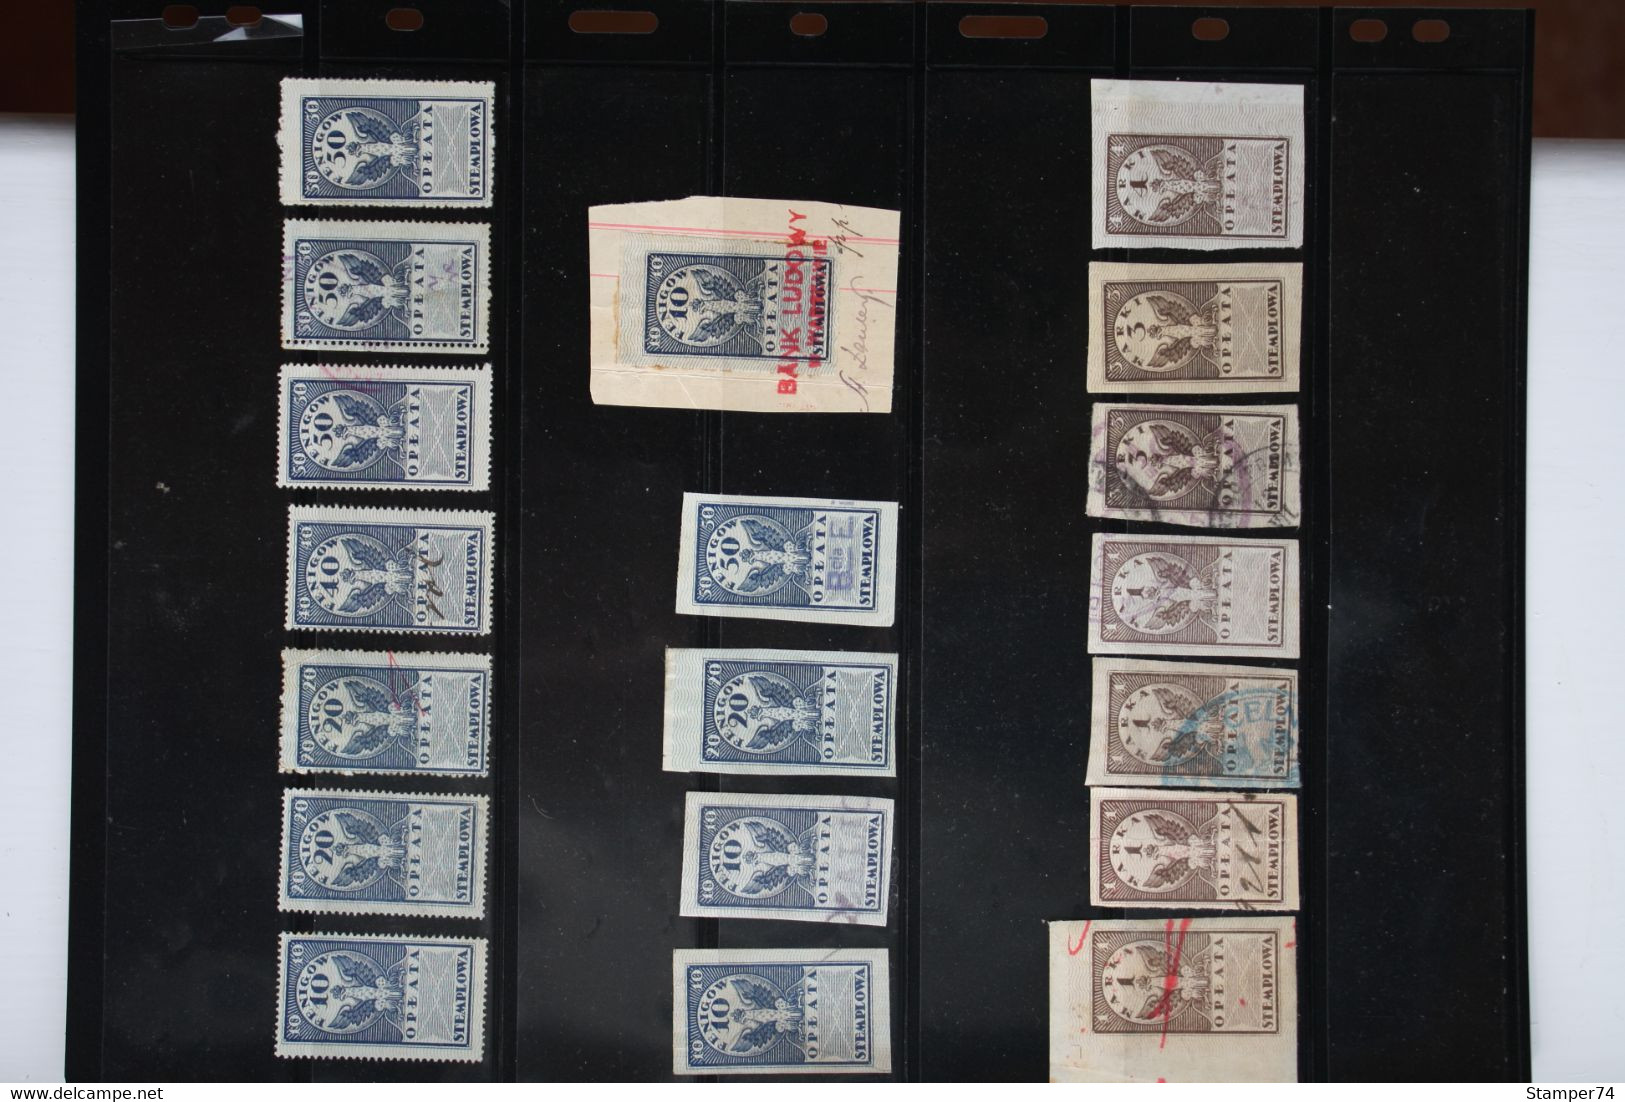 1920 Poland Revenue Stamps - Revenue Stamps